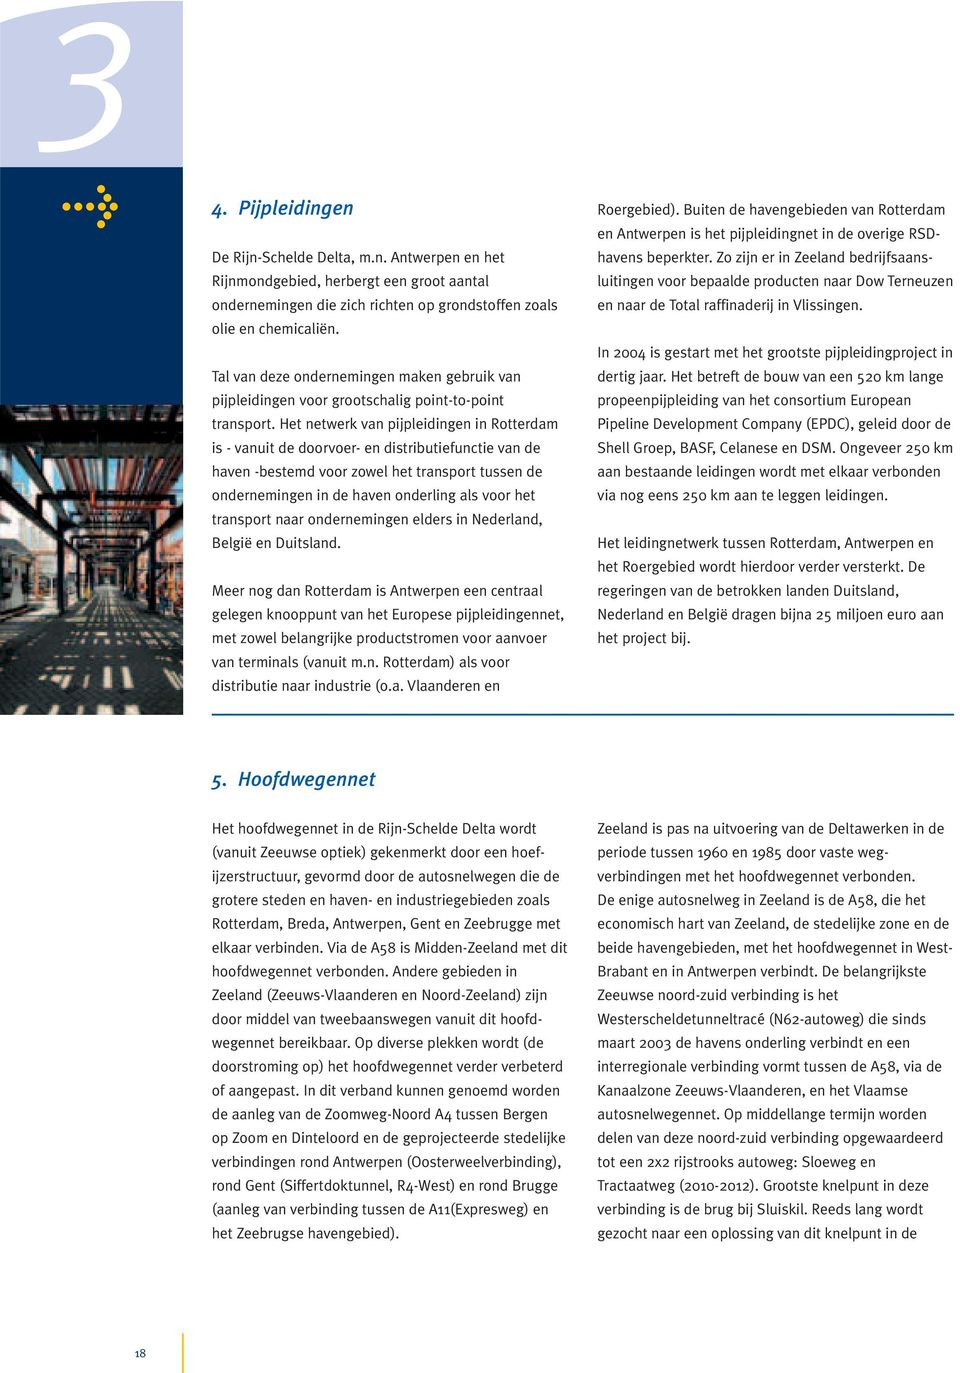 Het netwerk van pijpleidingen in Rotterdam is - vanuit de doorvoer- en distributiefunctie van de haven -bestemd voor zowel het transport tussen de ondernemingen in de haven onderling als voor het